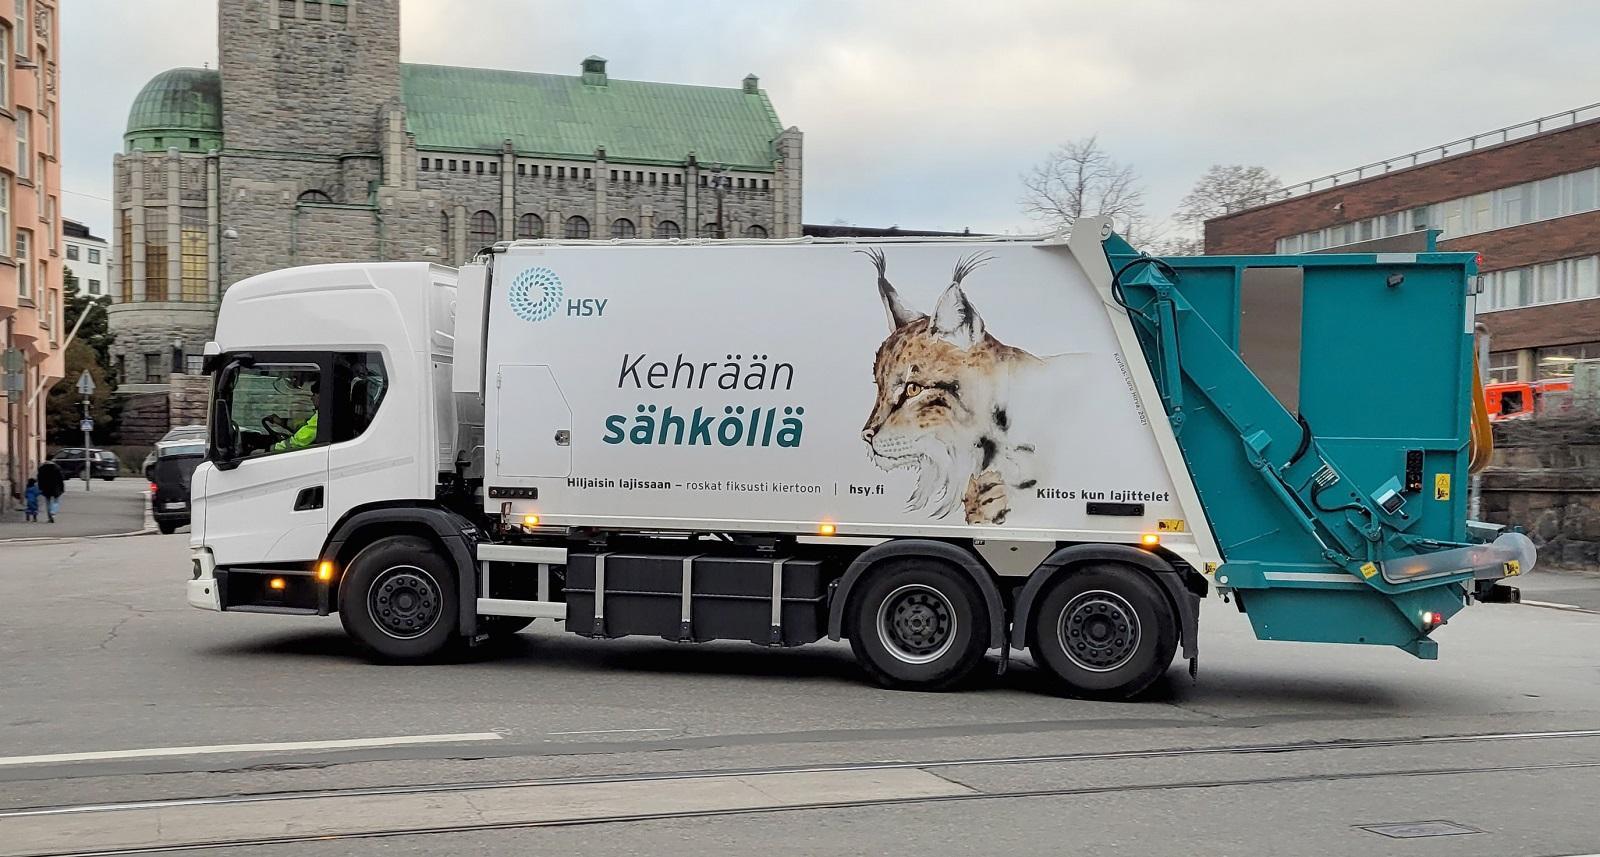 Helsingforsregionens miljötjänster har lanserat en eldriven sopbil.